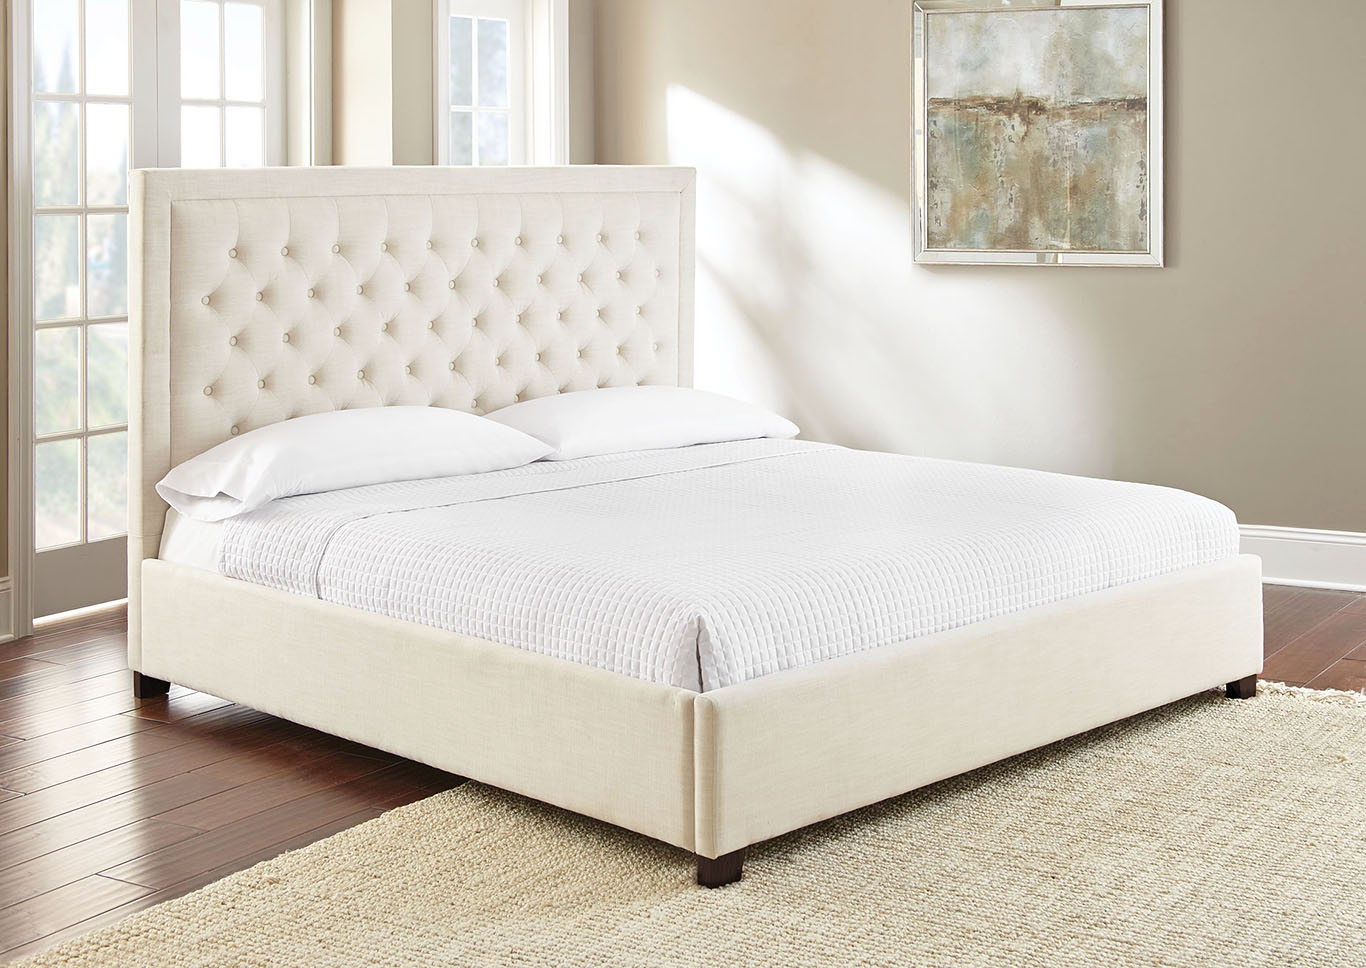 Isadora White Upholstered King Bed, White Upholstered King Bed